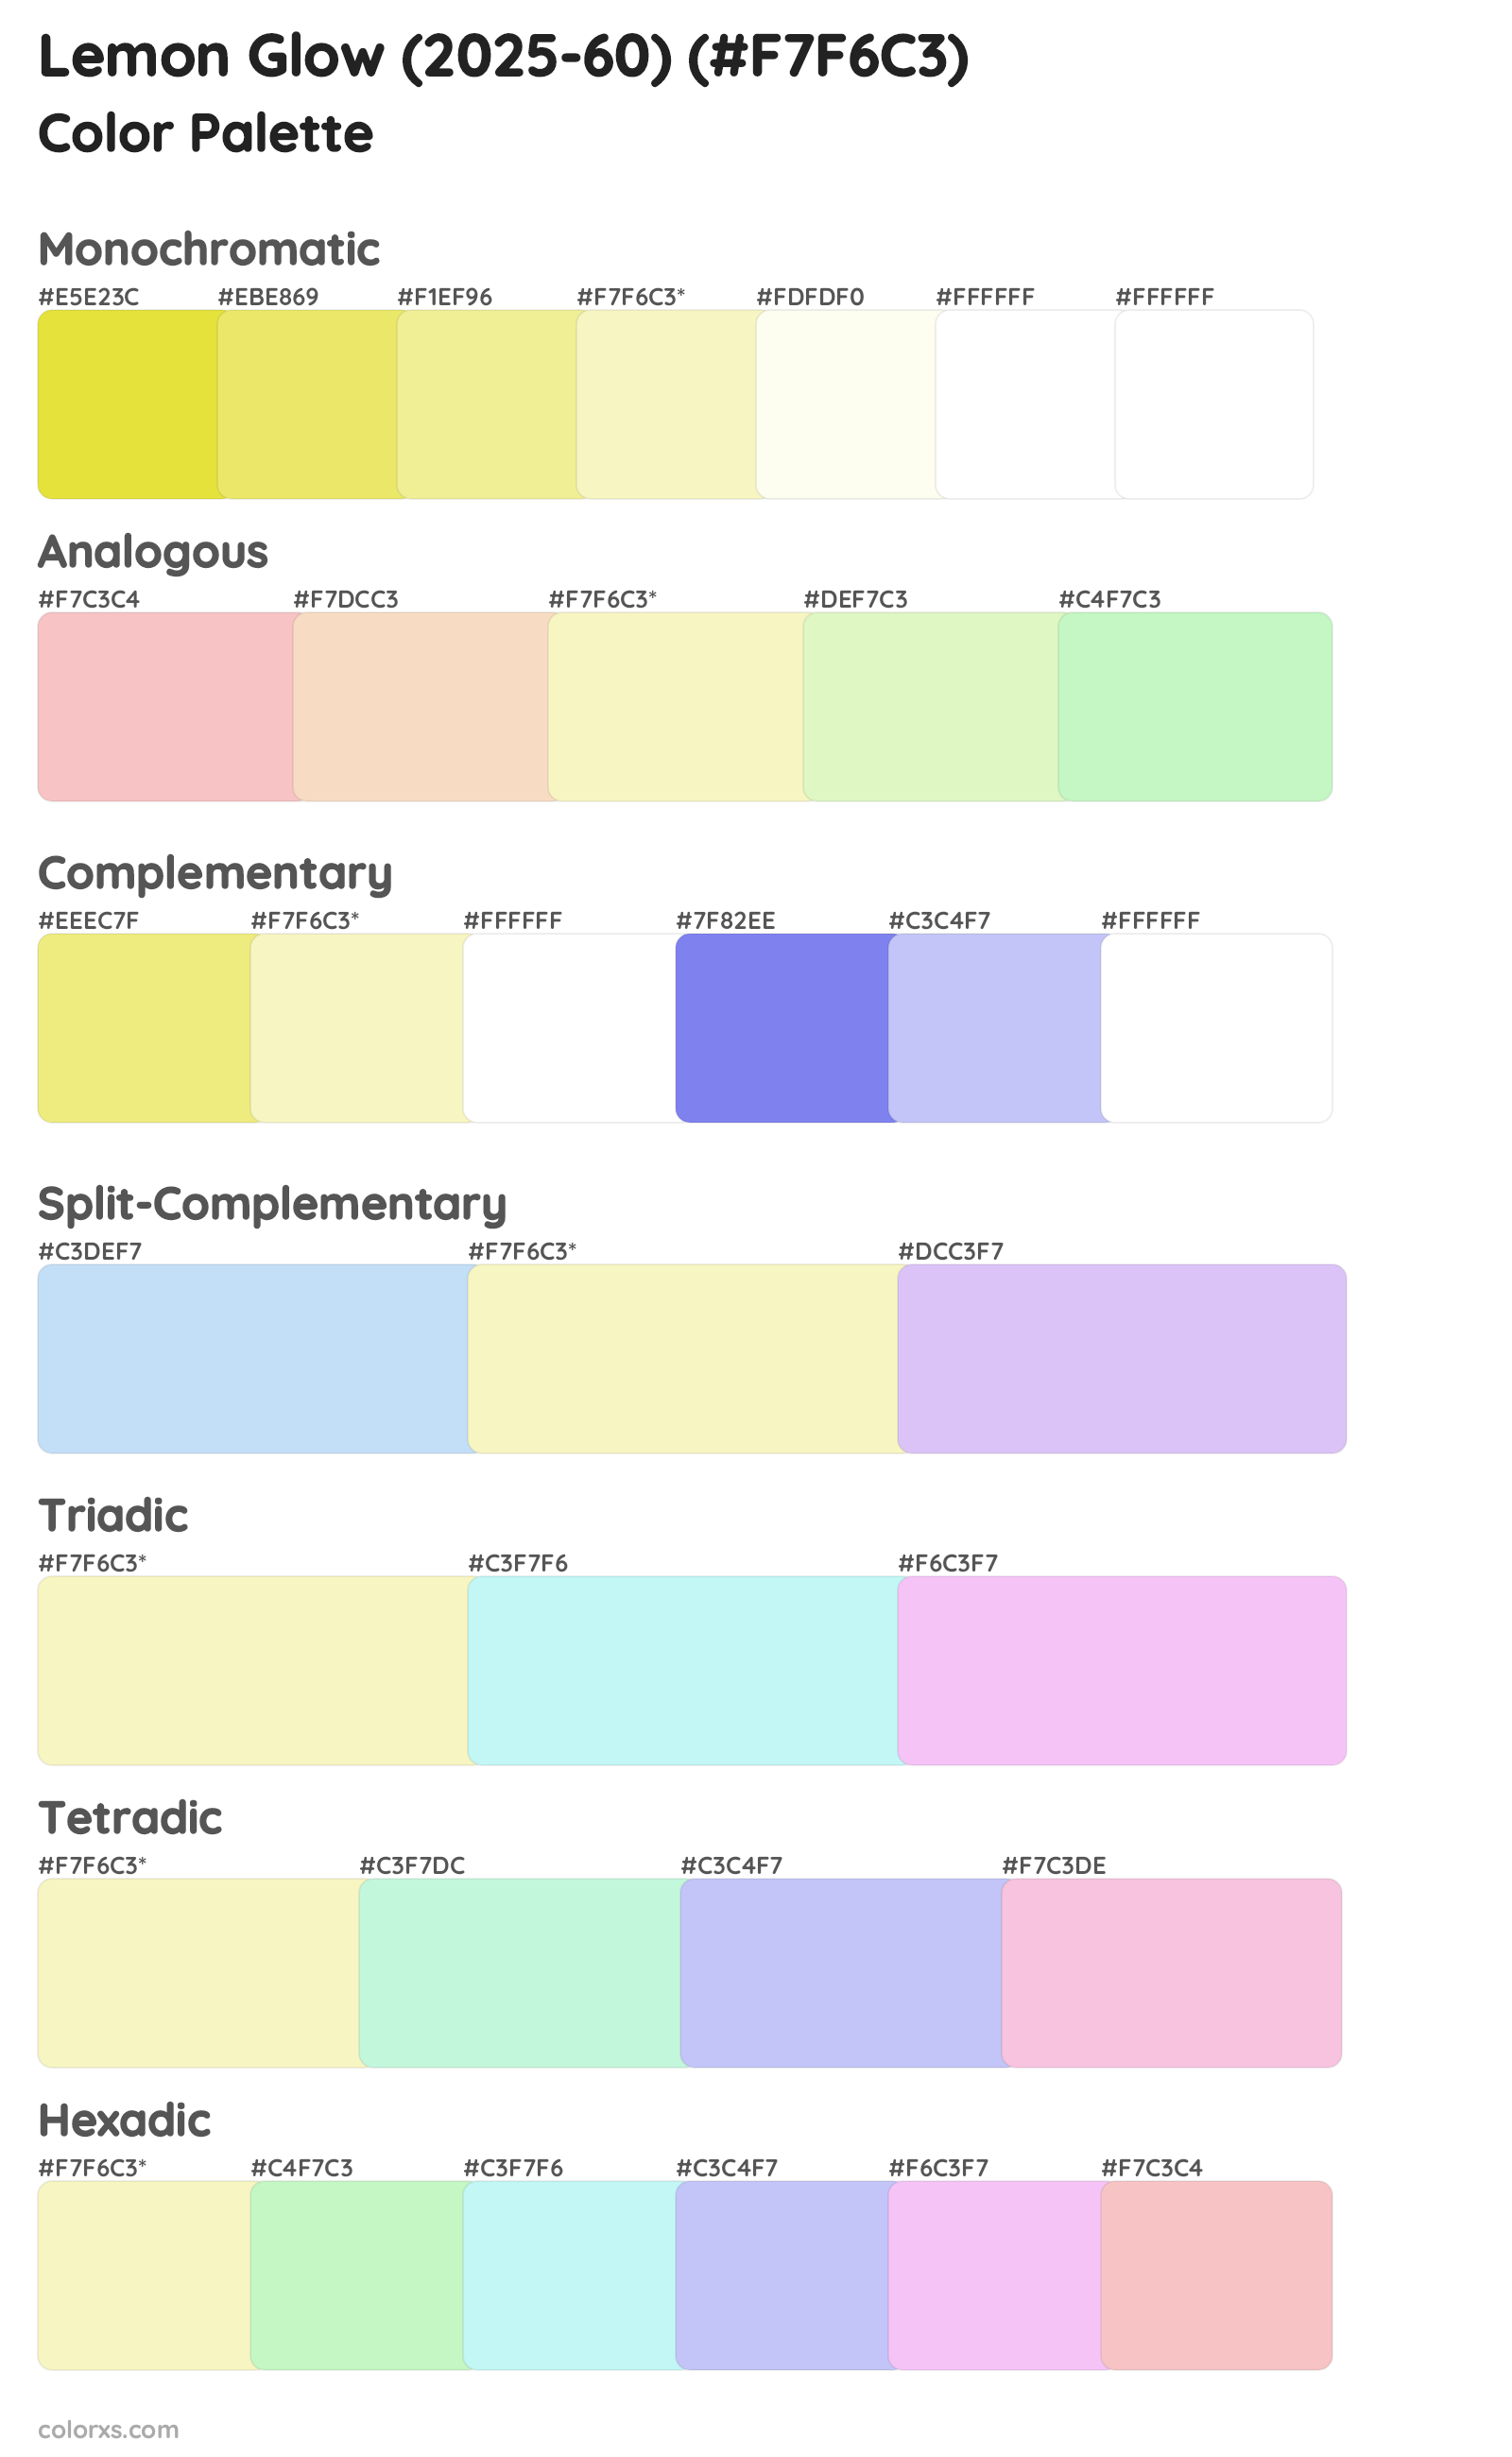 Lemon Glow (2025-60) Color Scheme Palettes